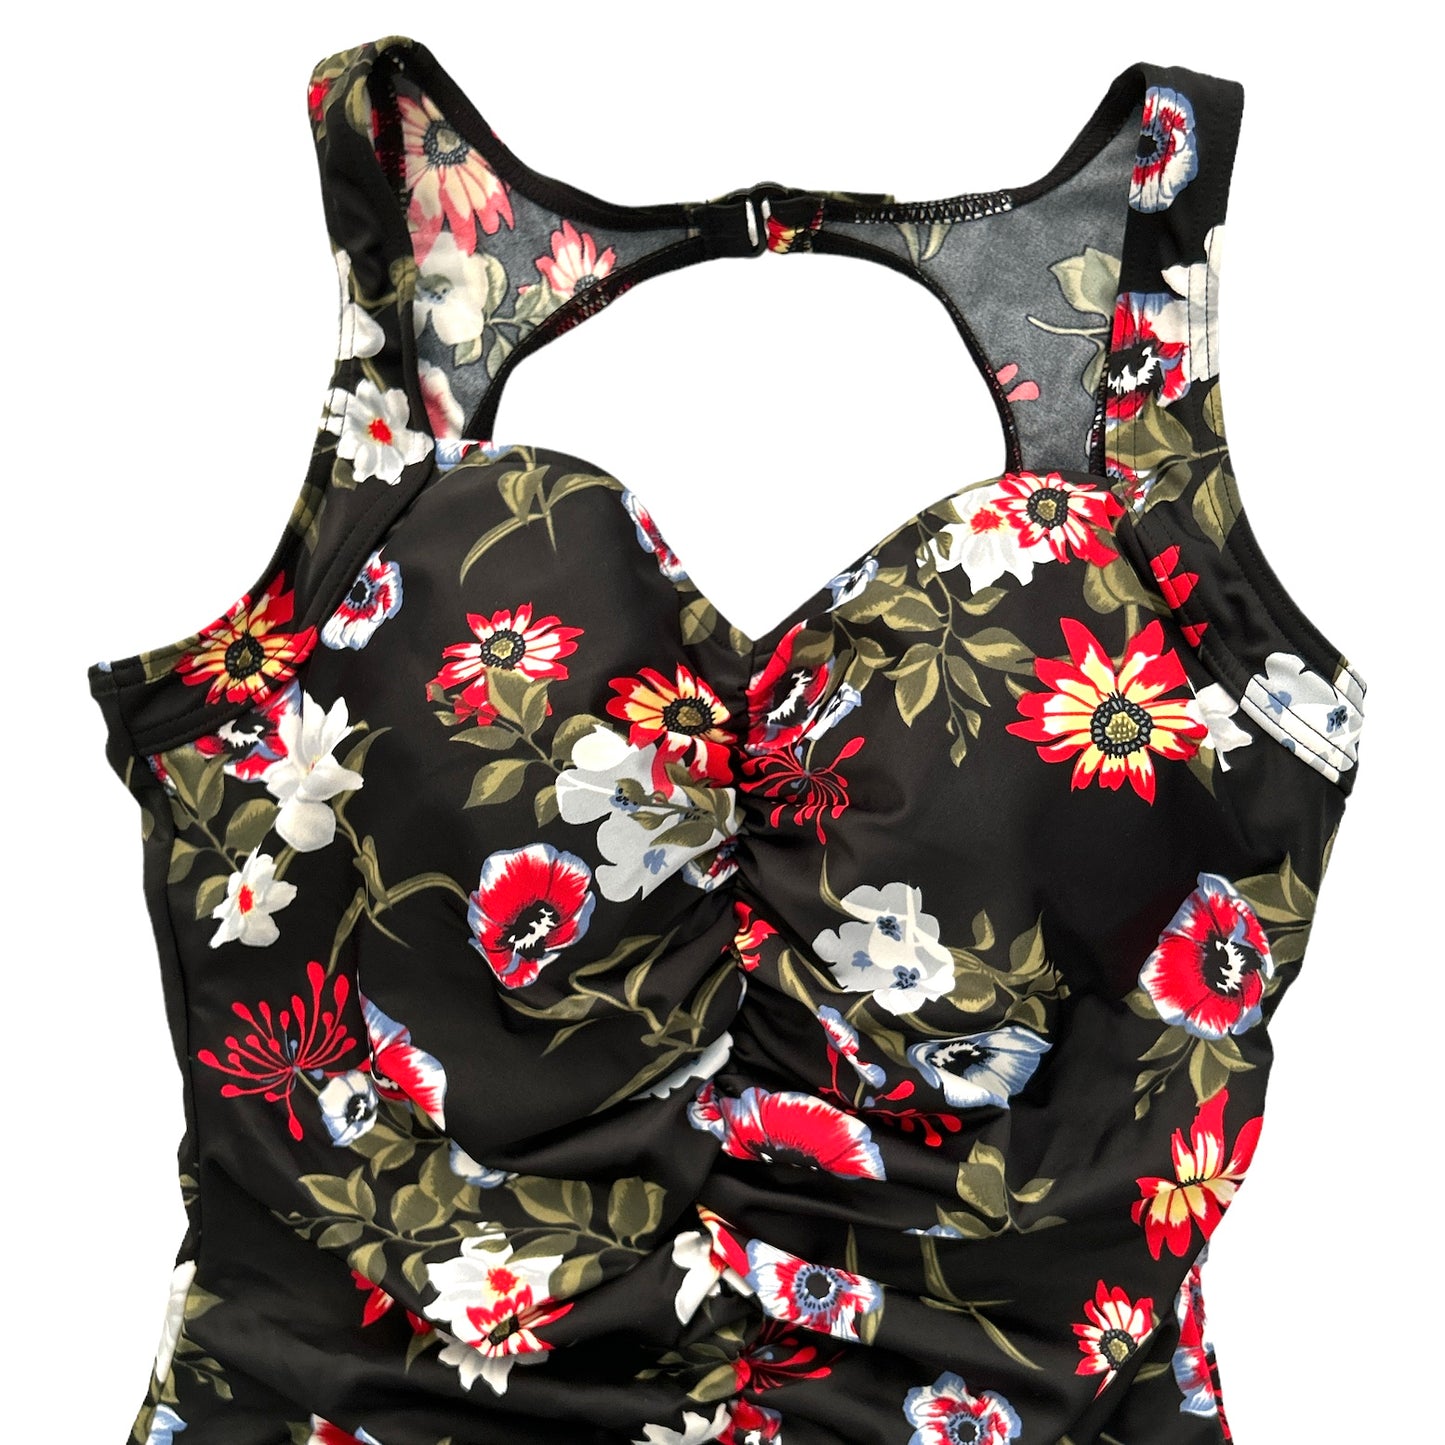 TUMMY Black/Multicolor Floral Print One Pieces Women's Swimsuit